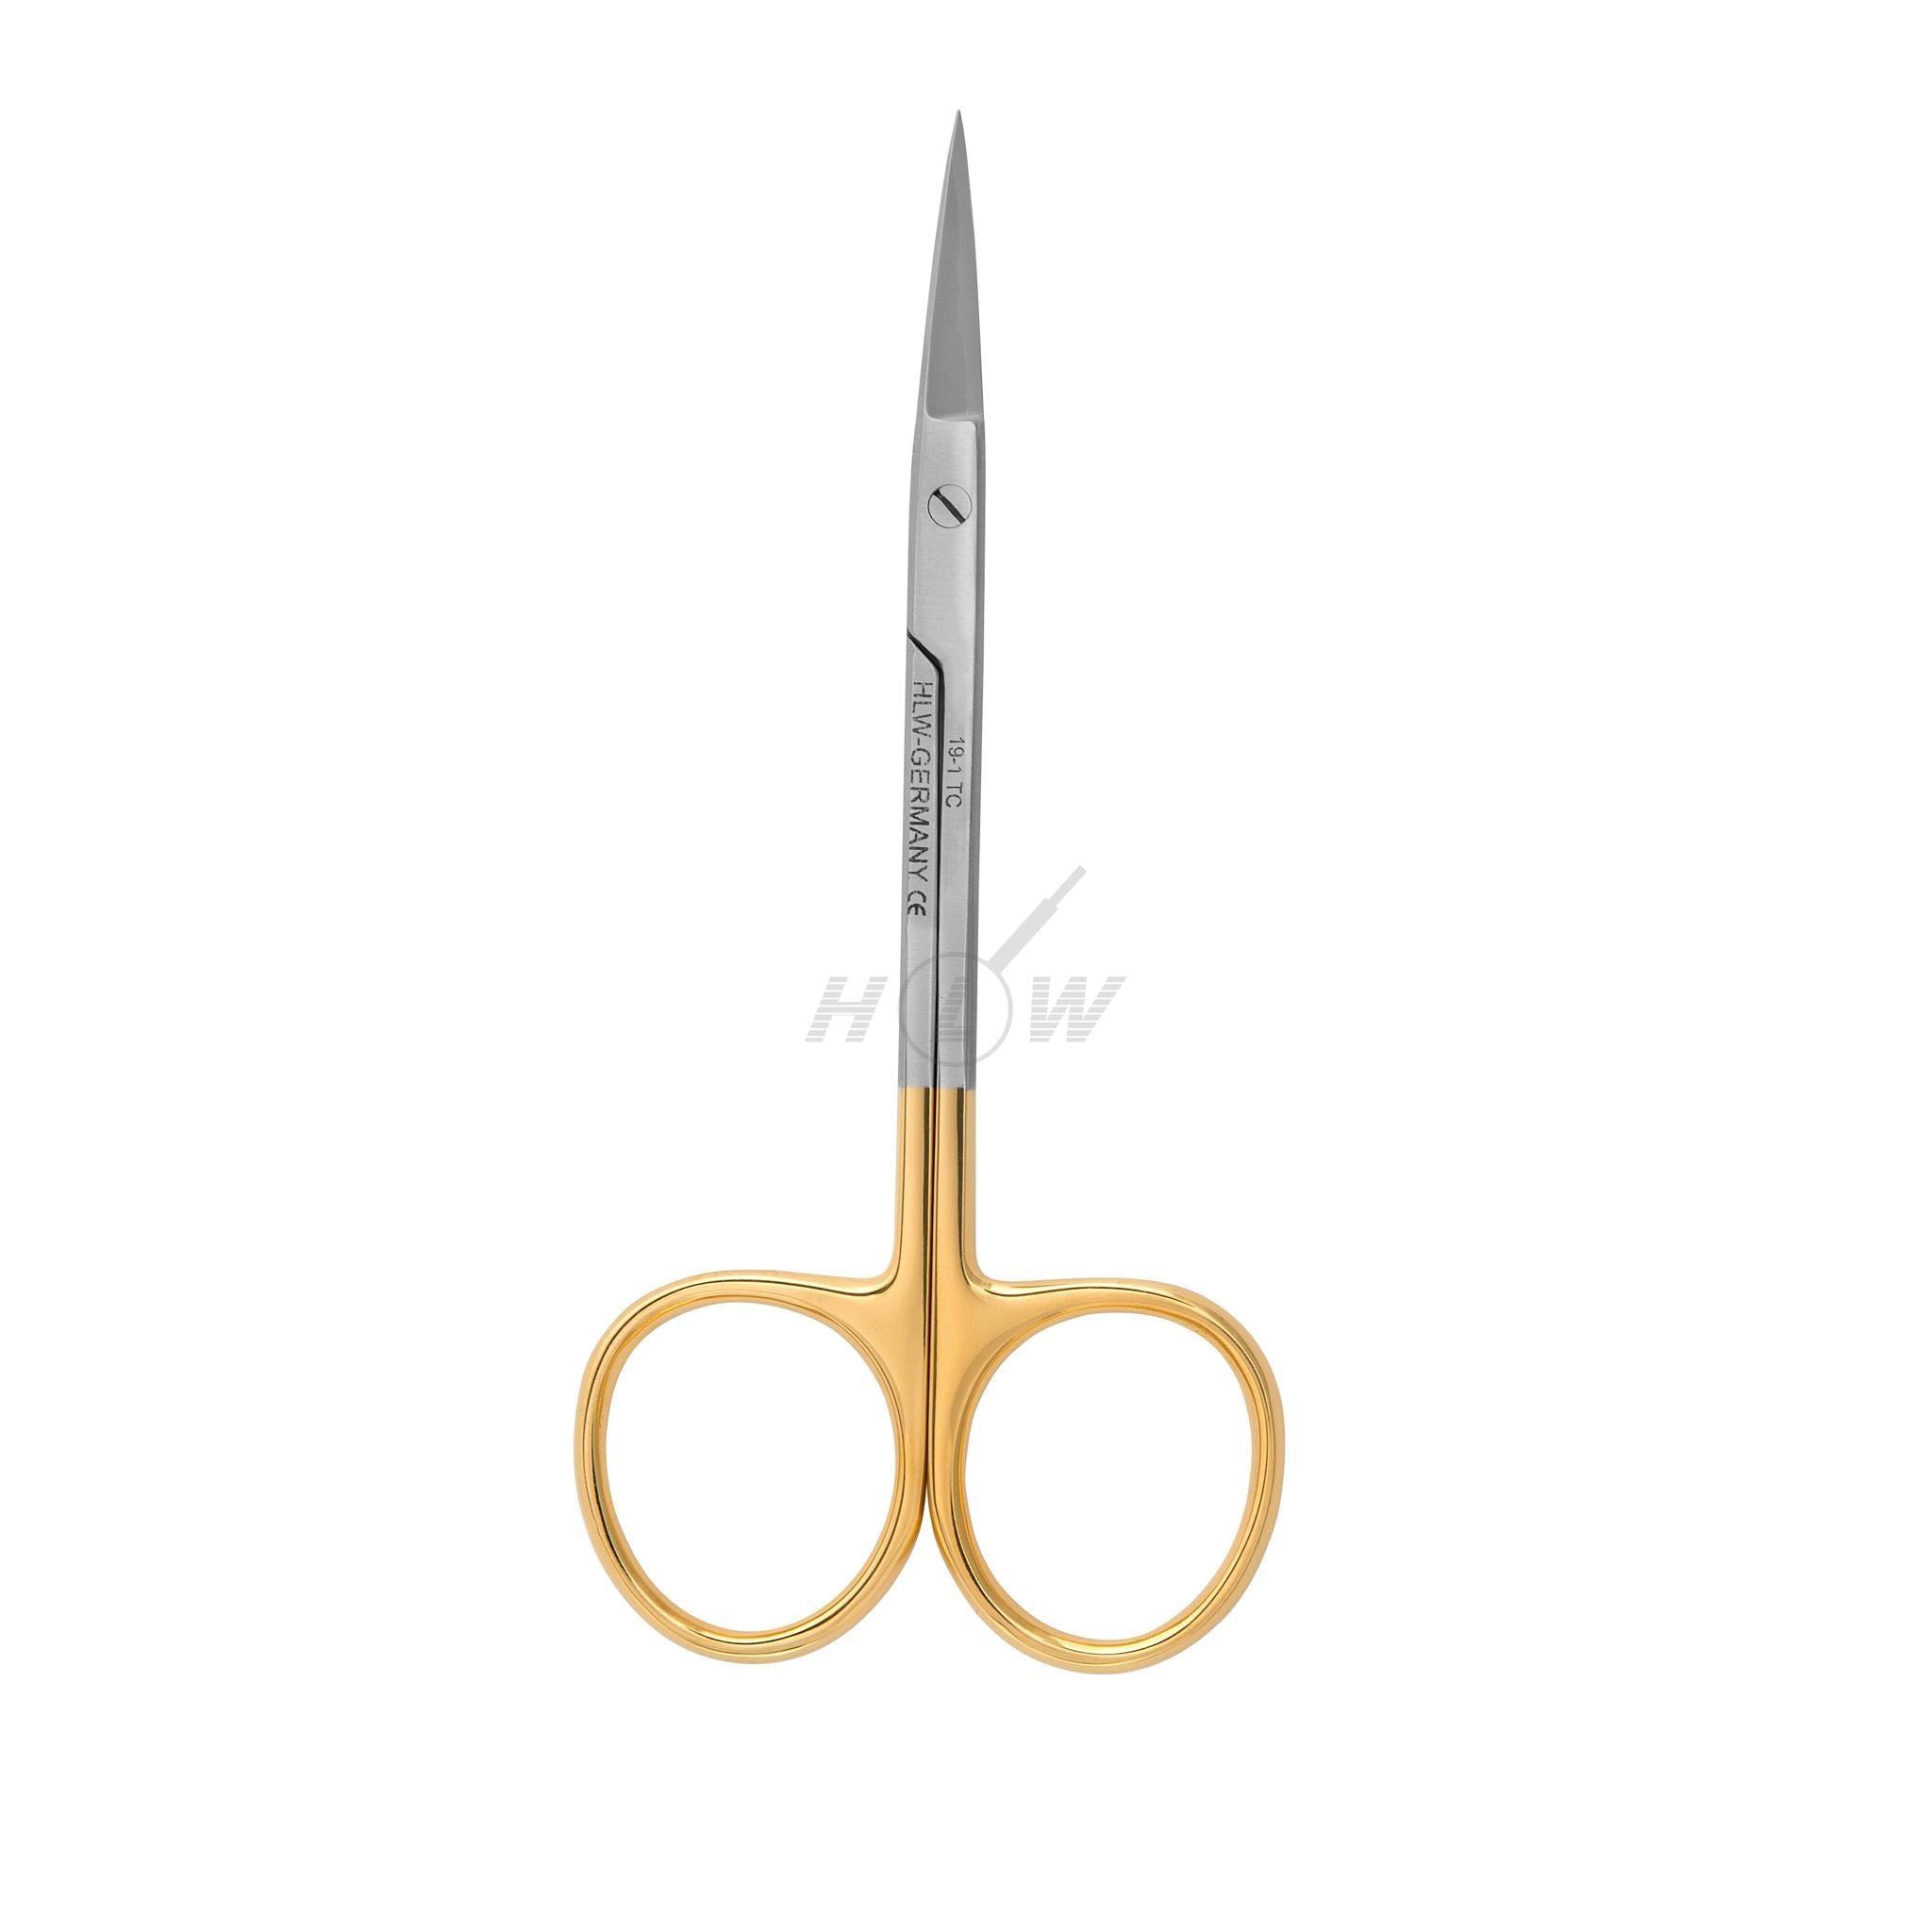 Iris scissors<br> 11.5cm